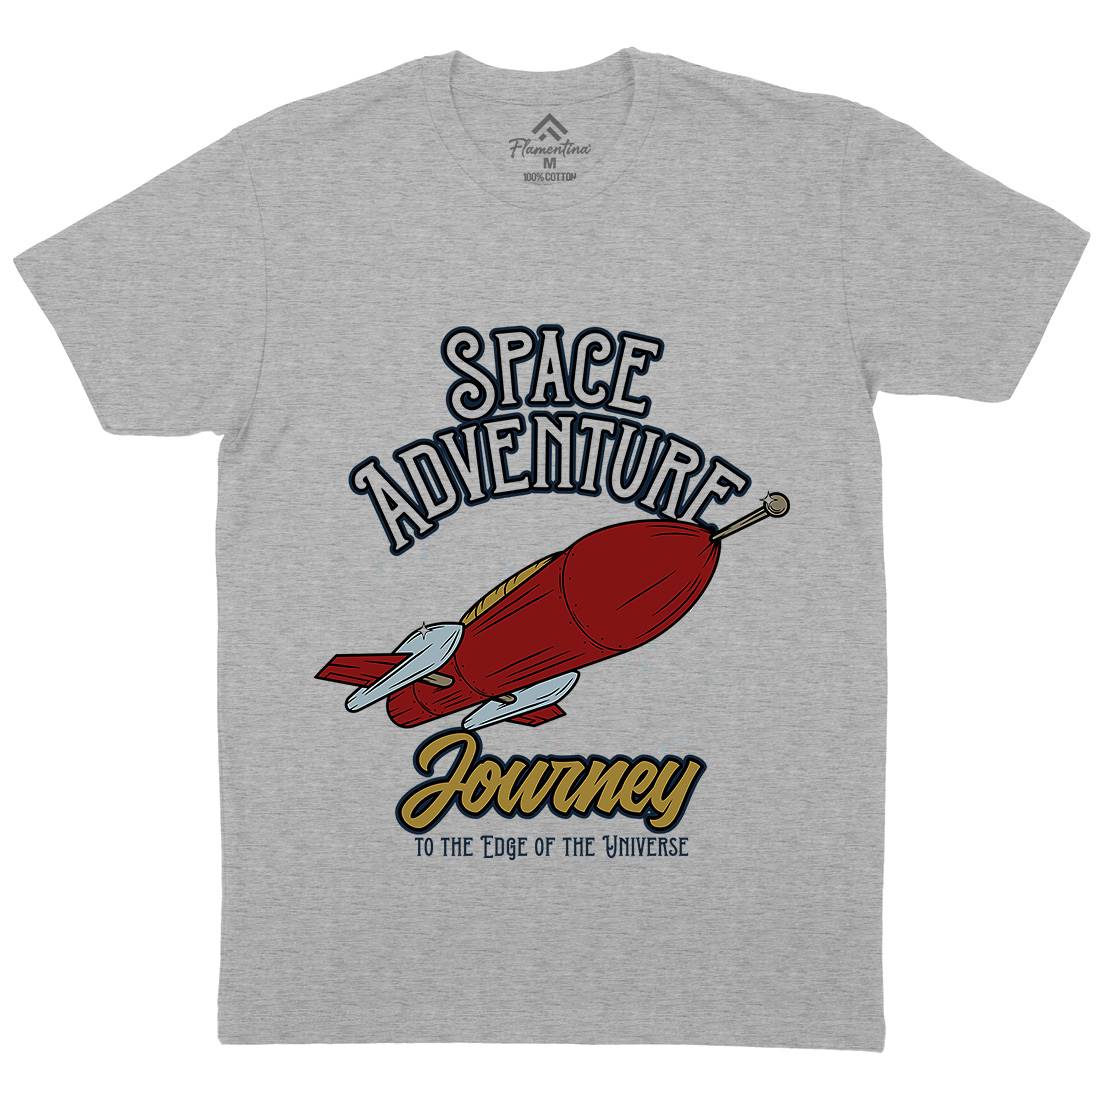 Adventure Mens Crew Neck T-Shirt Space D978